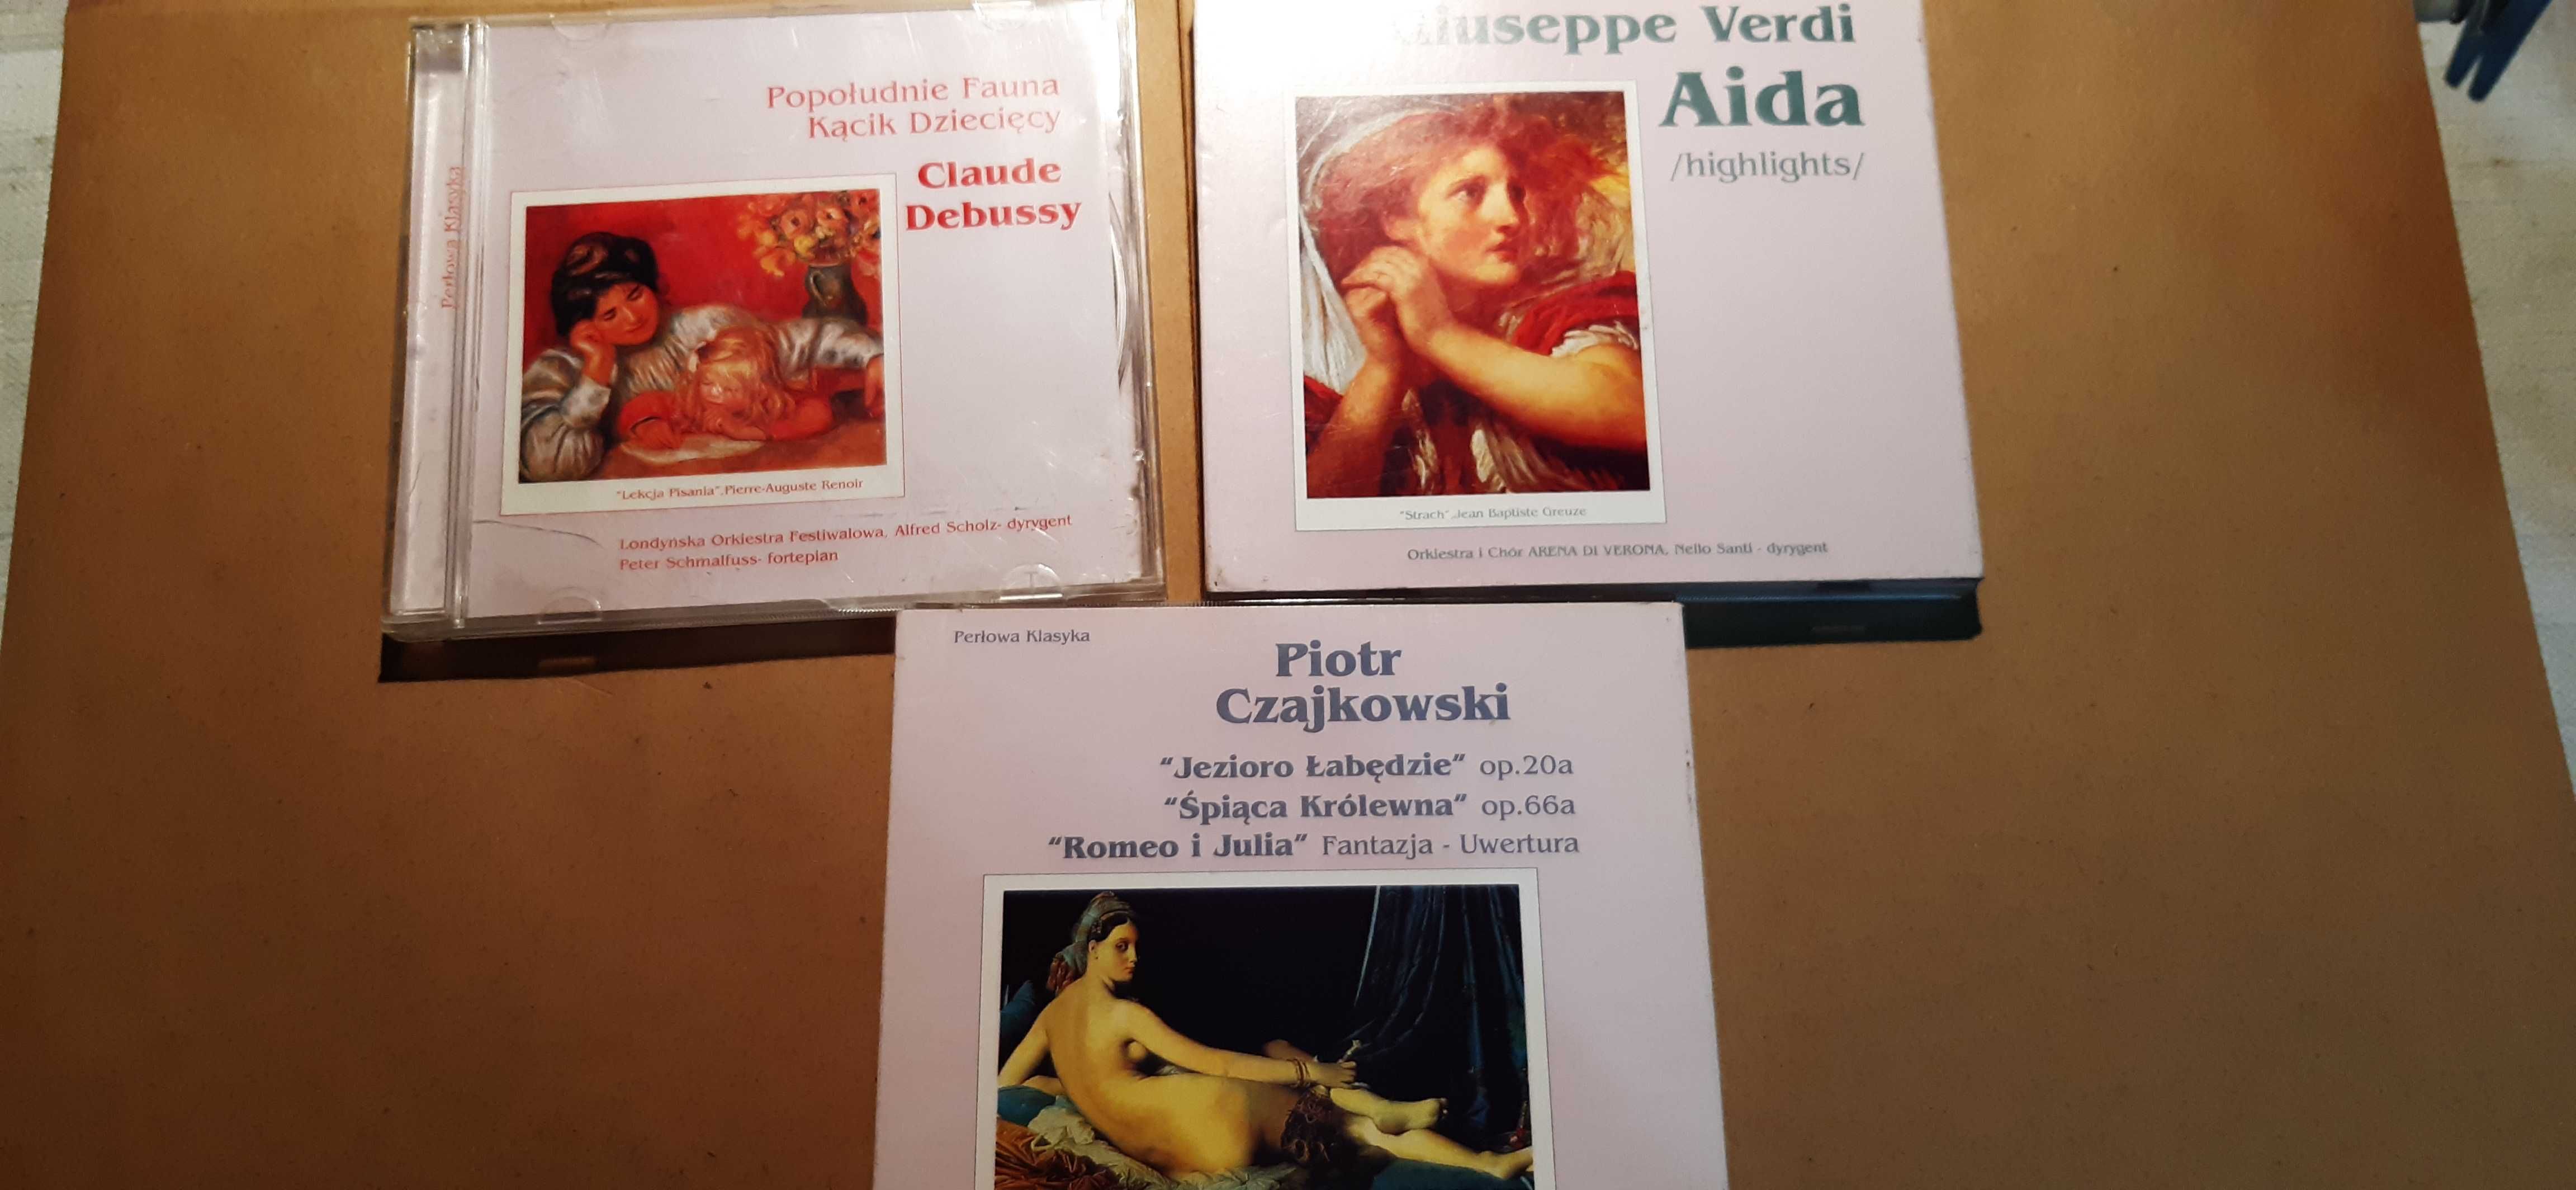 3 cd muzyka klasyczna i opery, czjkowski, aida